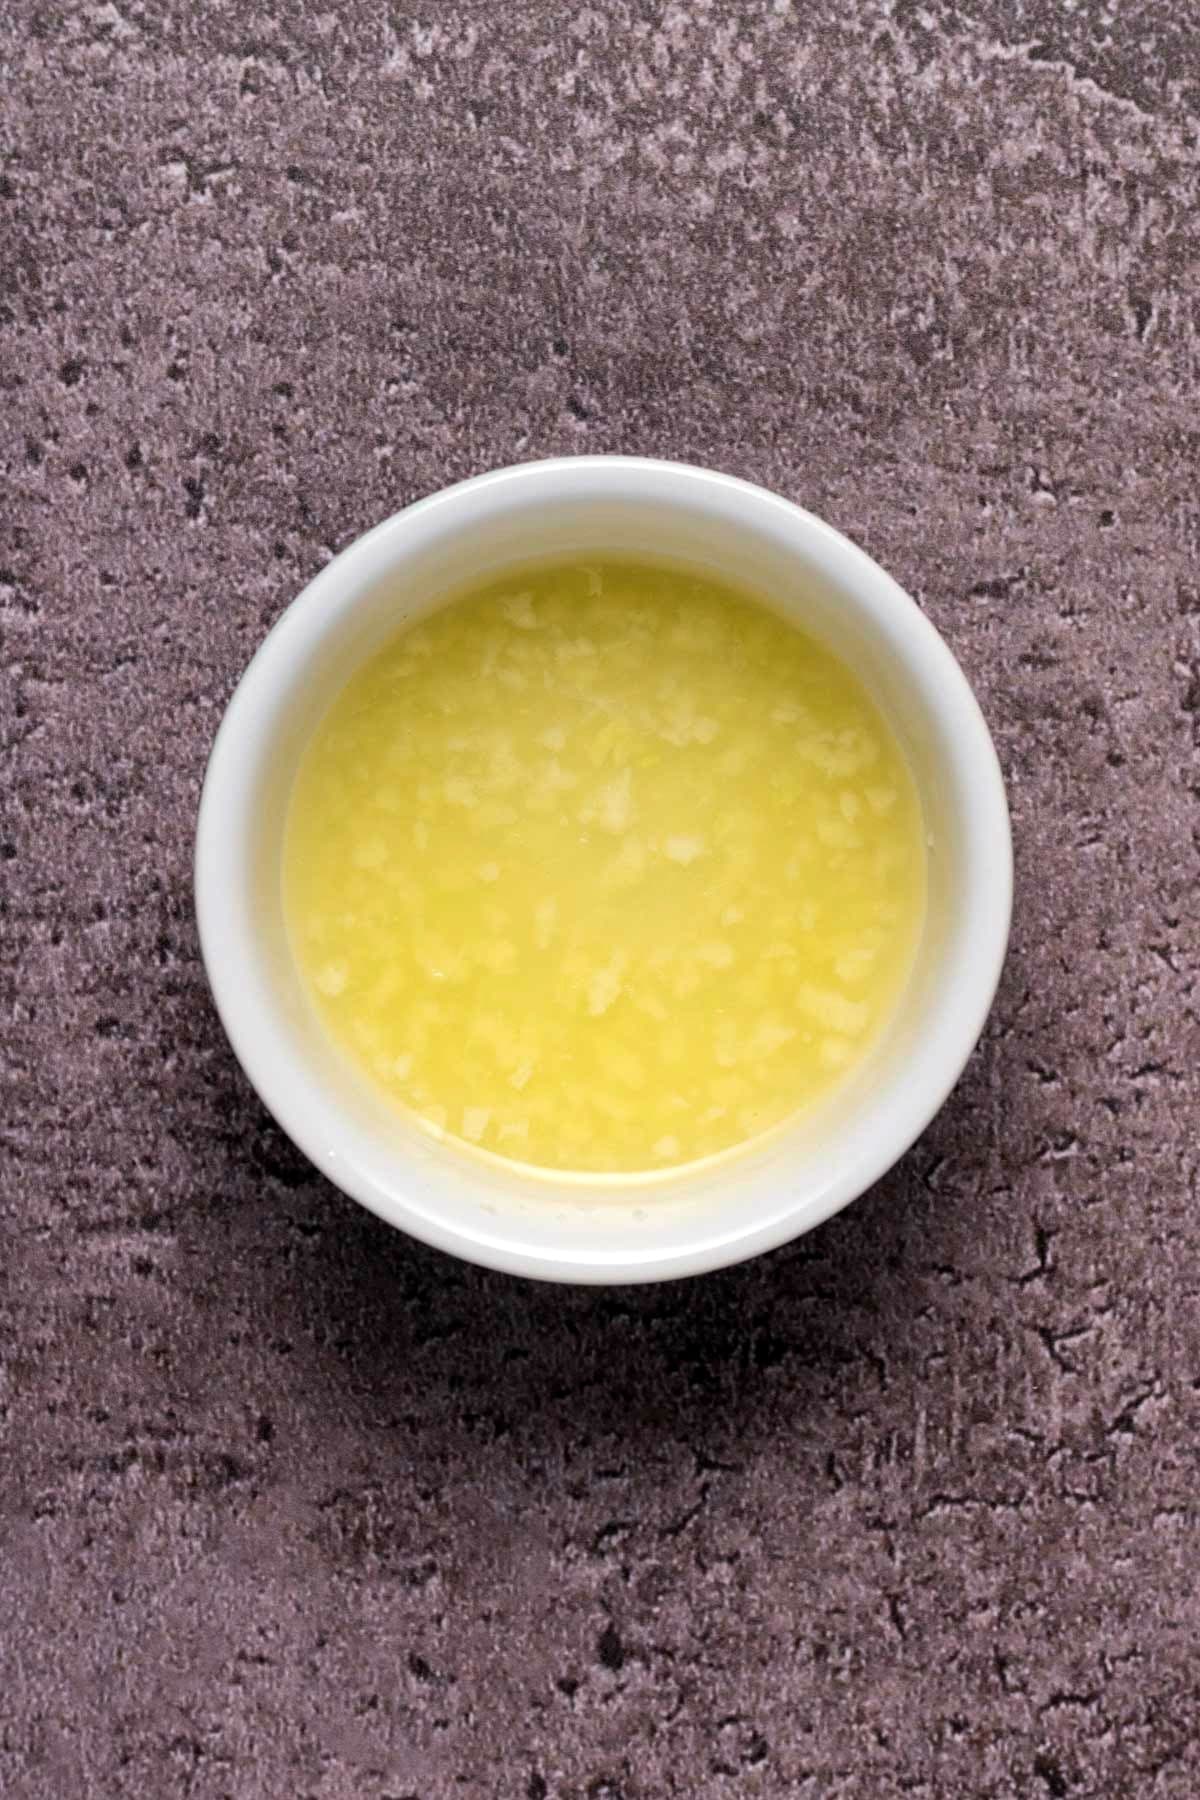 Fresh garlic soaking in a bowl of fresh lemon juice.